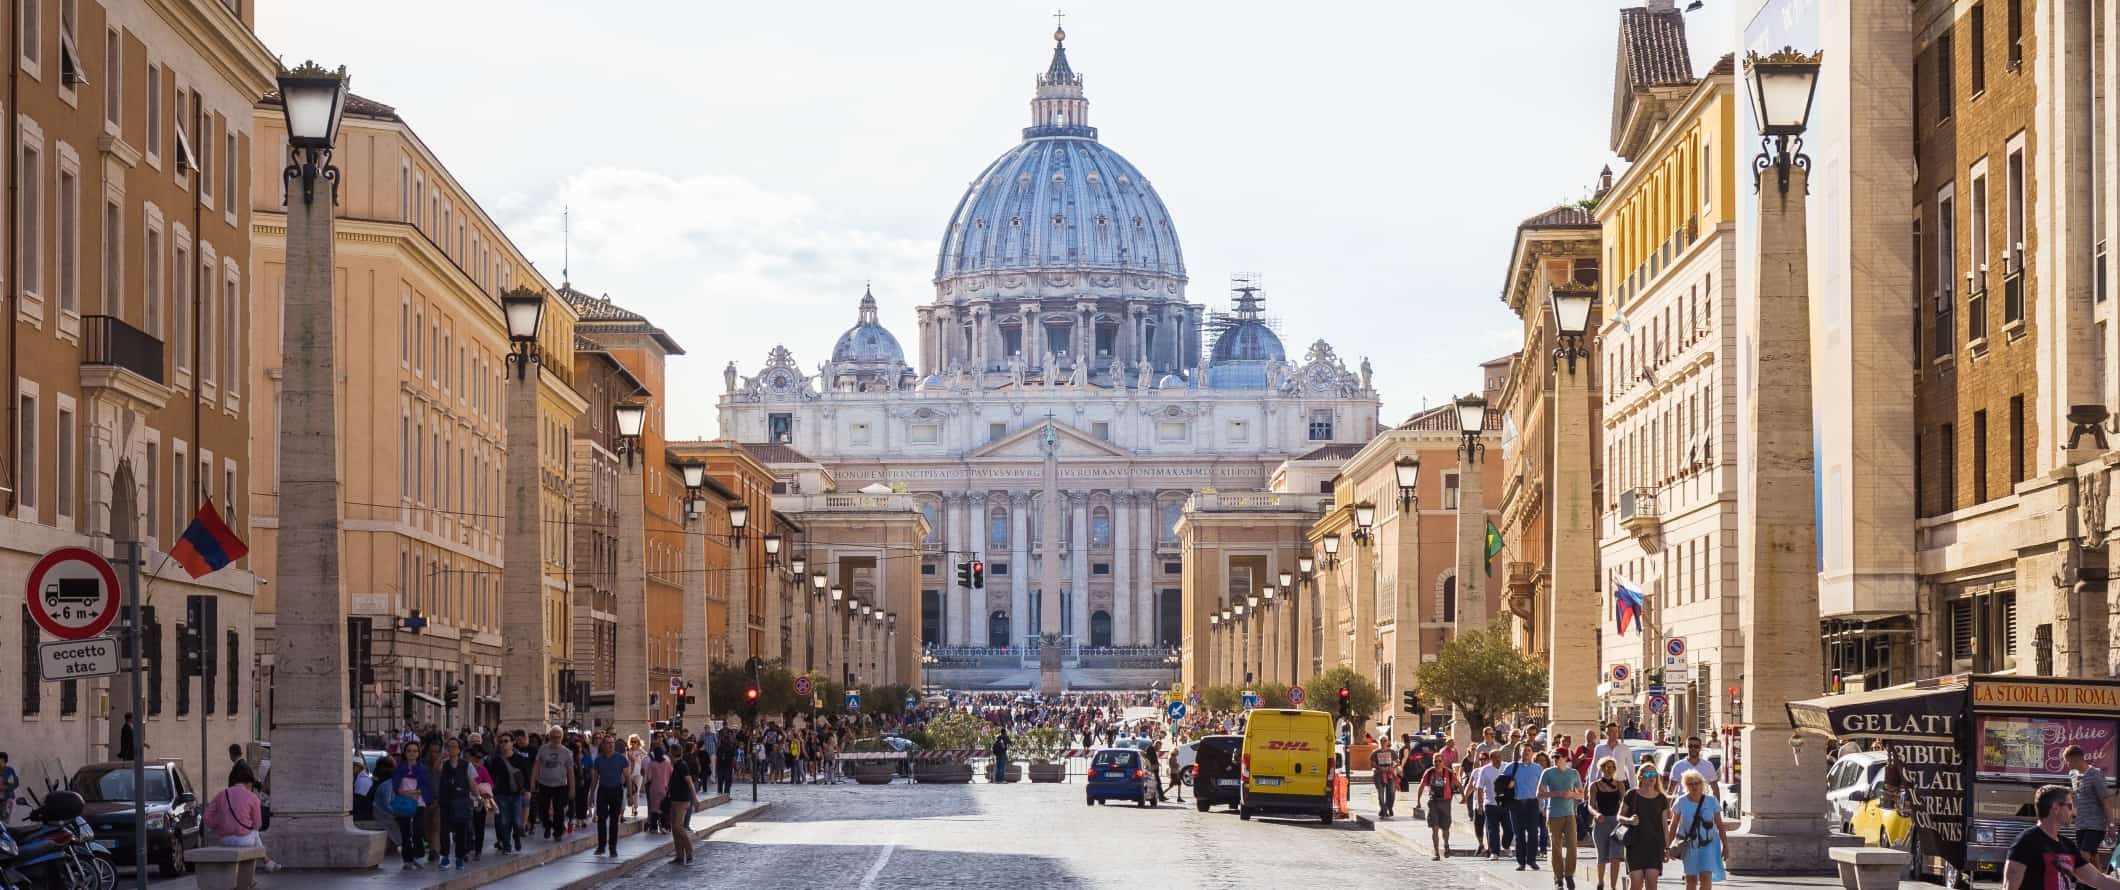 在意大利罗马，宽阔的街道上挤满了人，尽头是长方形教堂